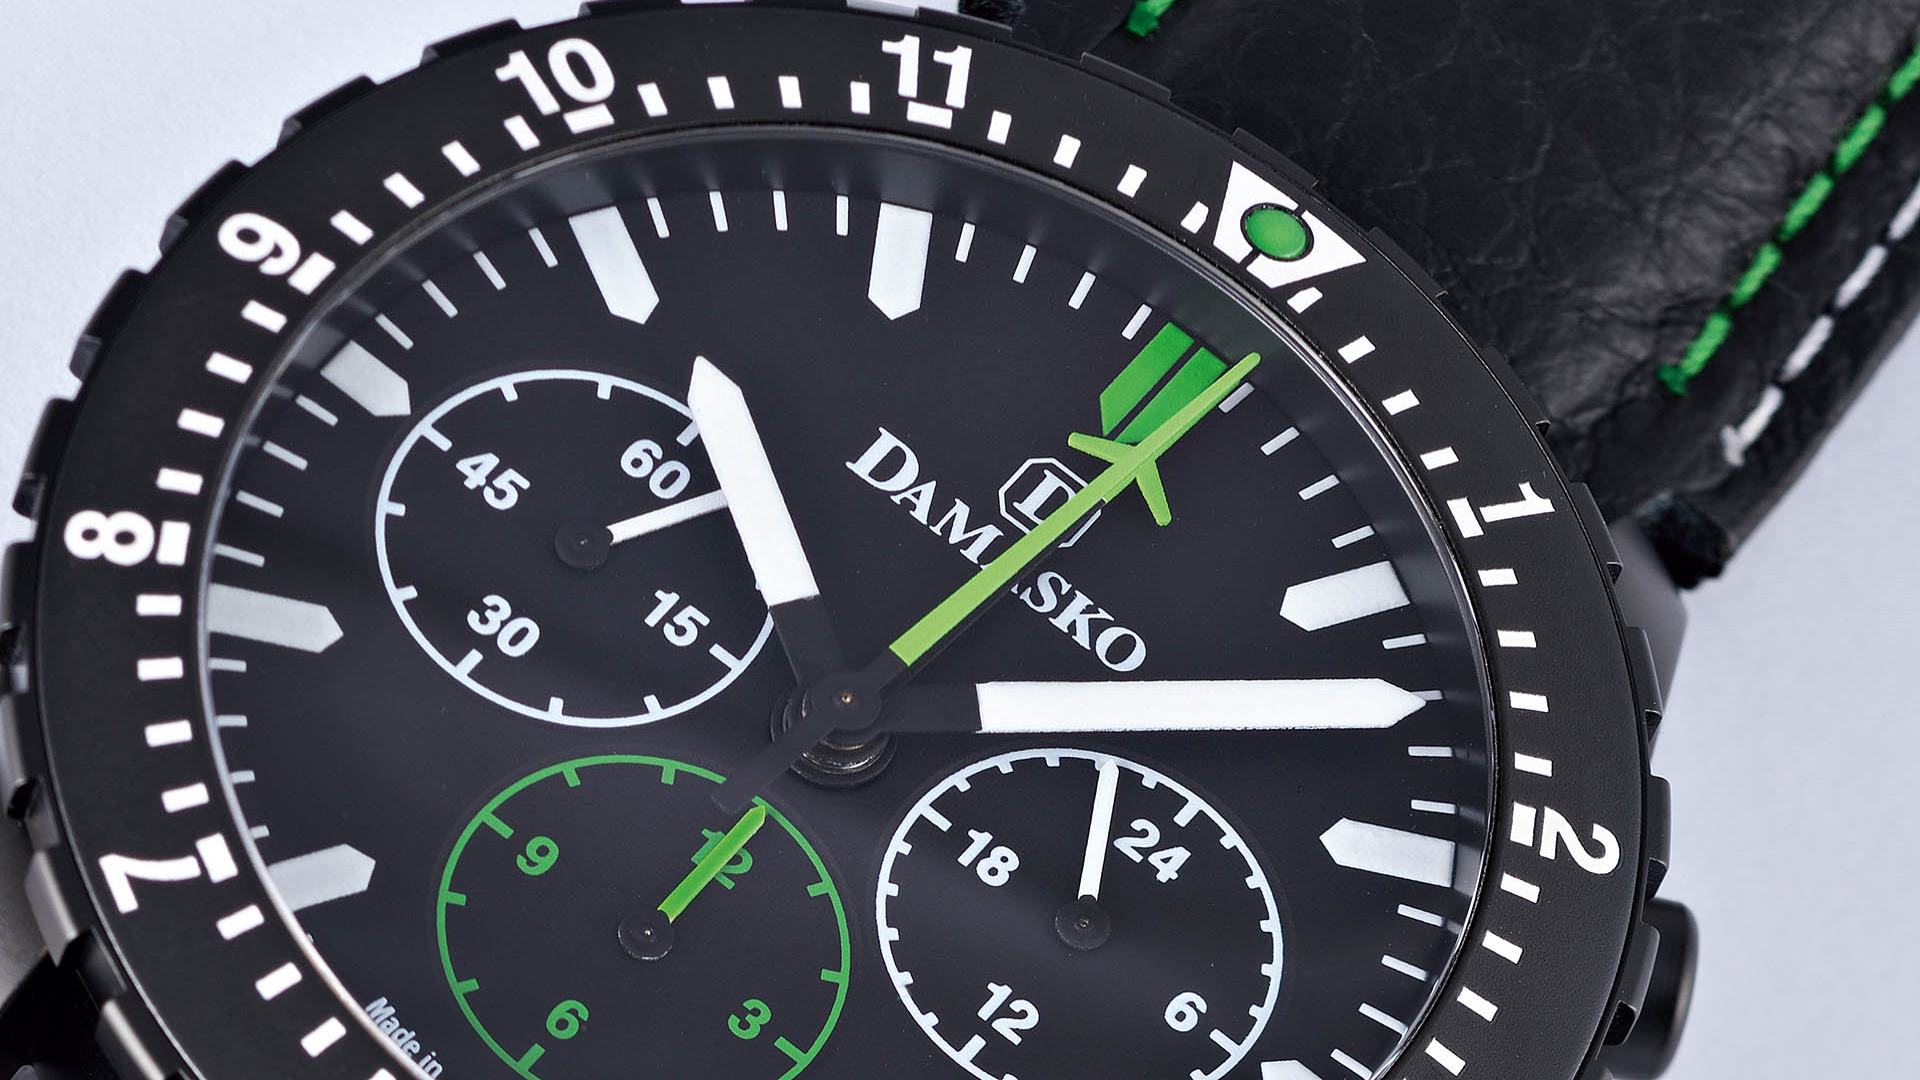 Das Modell DC 86 von Damasko hat ein gut ablesbares Zifferblatt. Die Anzeigen für den Chronographen sind in Grün gehalten: Der Sekundenzähler und der Minutenzähler mit einer Flugzeug-Silhouette als Spitze rotieren aus der Mitte. Der Stundenzähler befindet sich bei der «6».